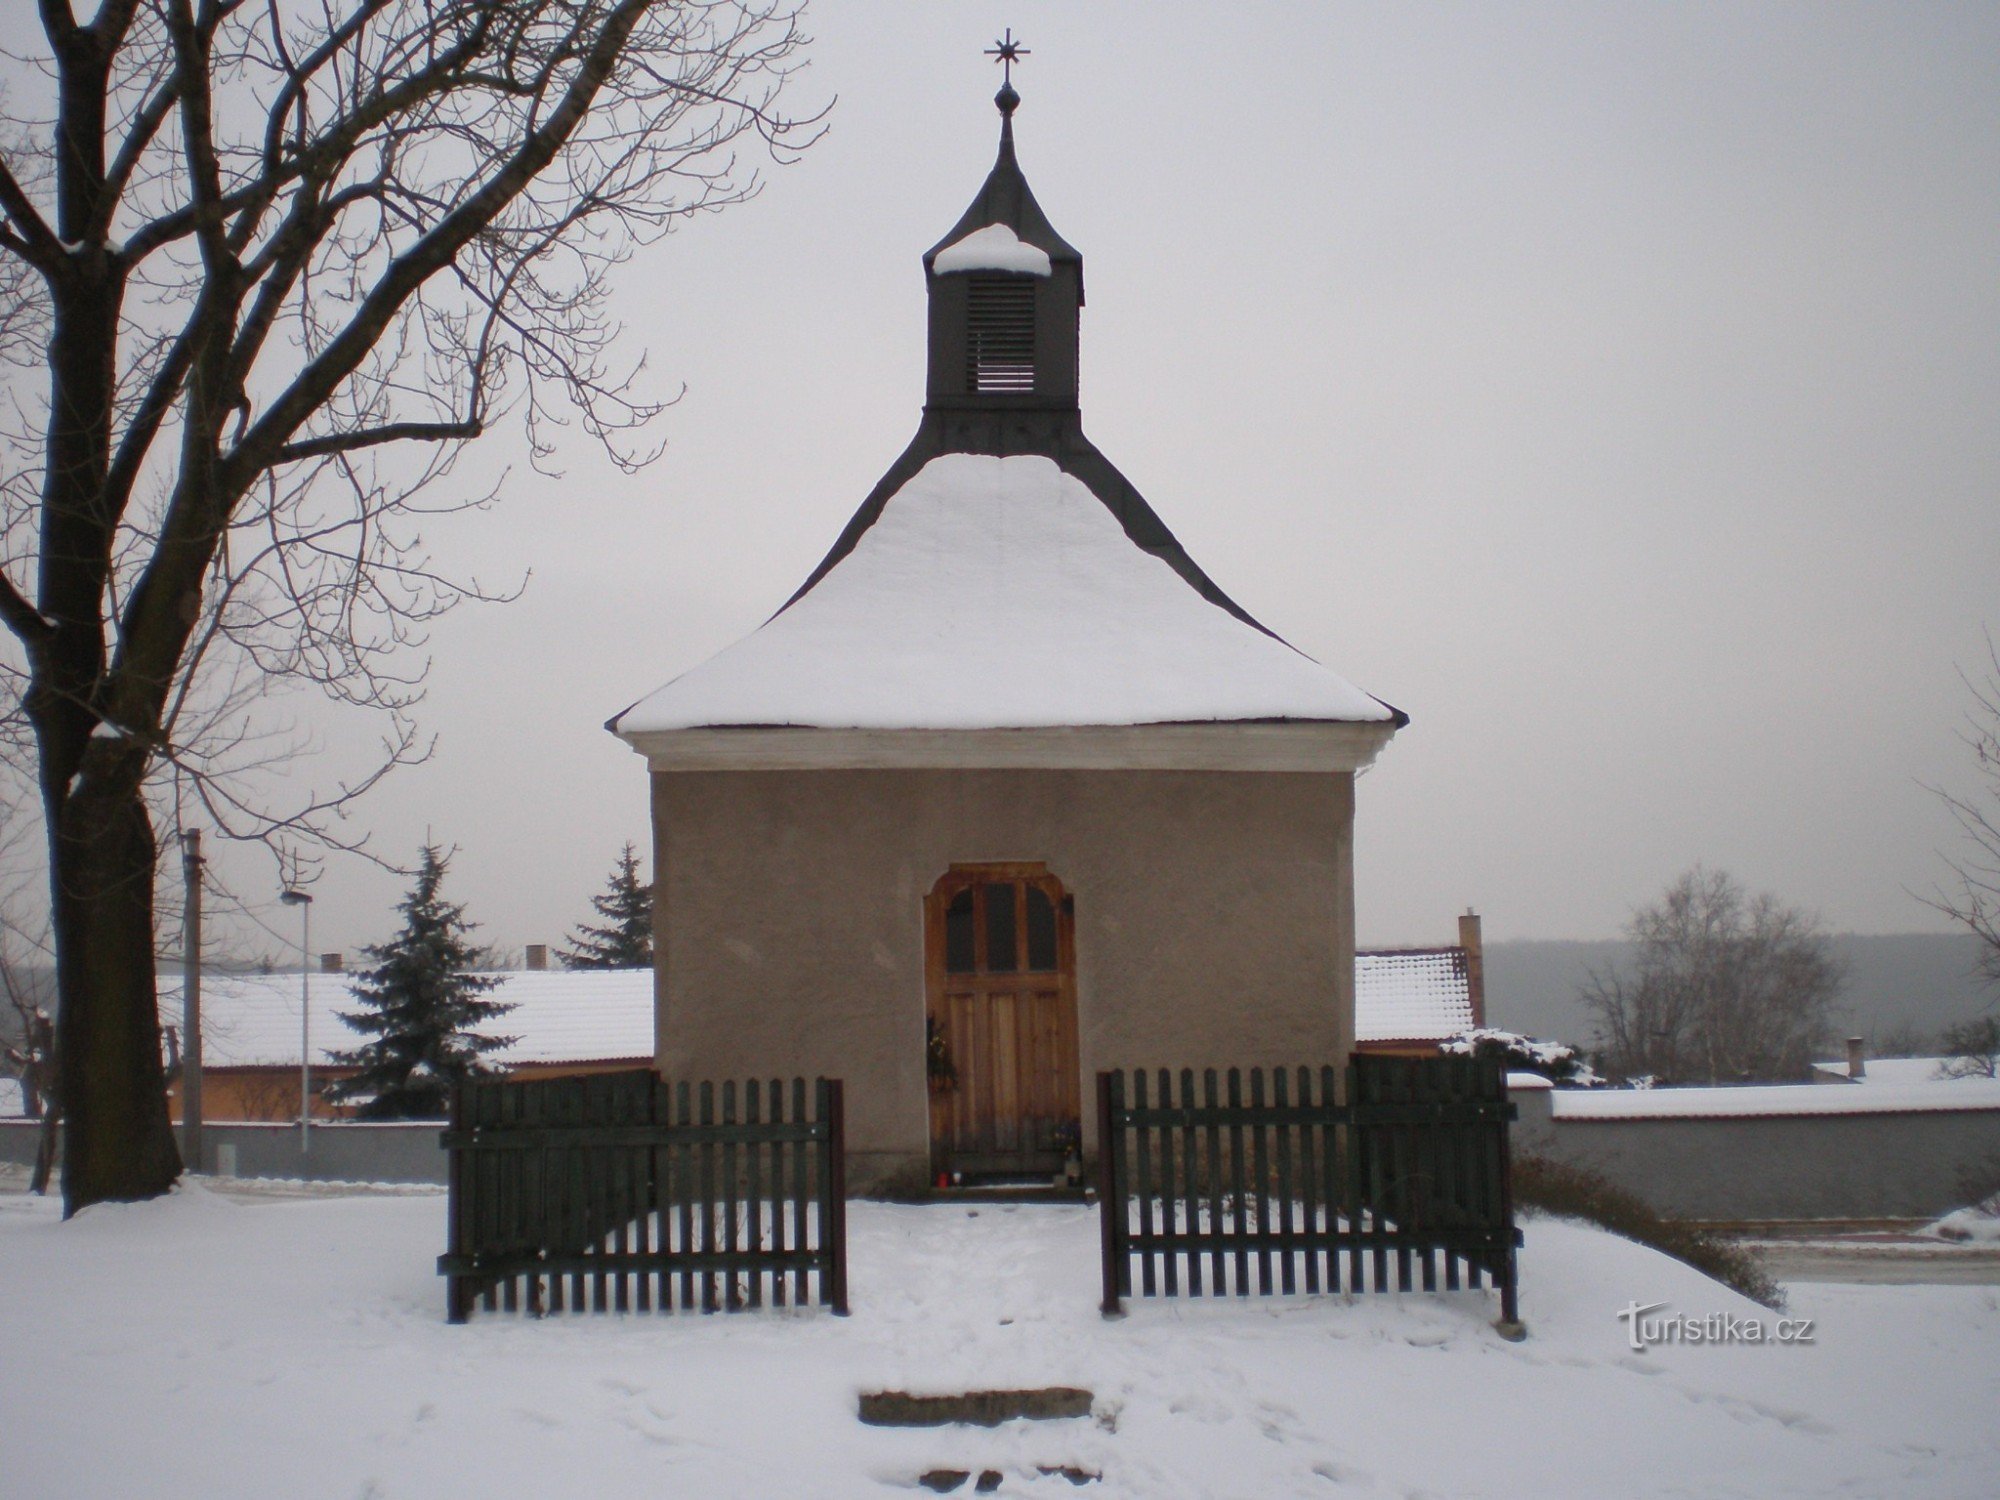 Svépravice - capela